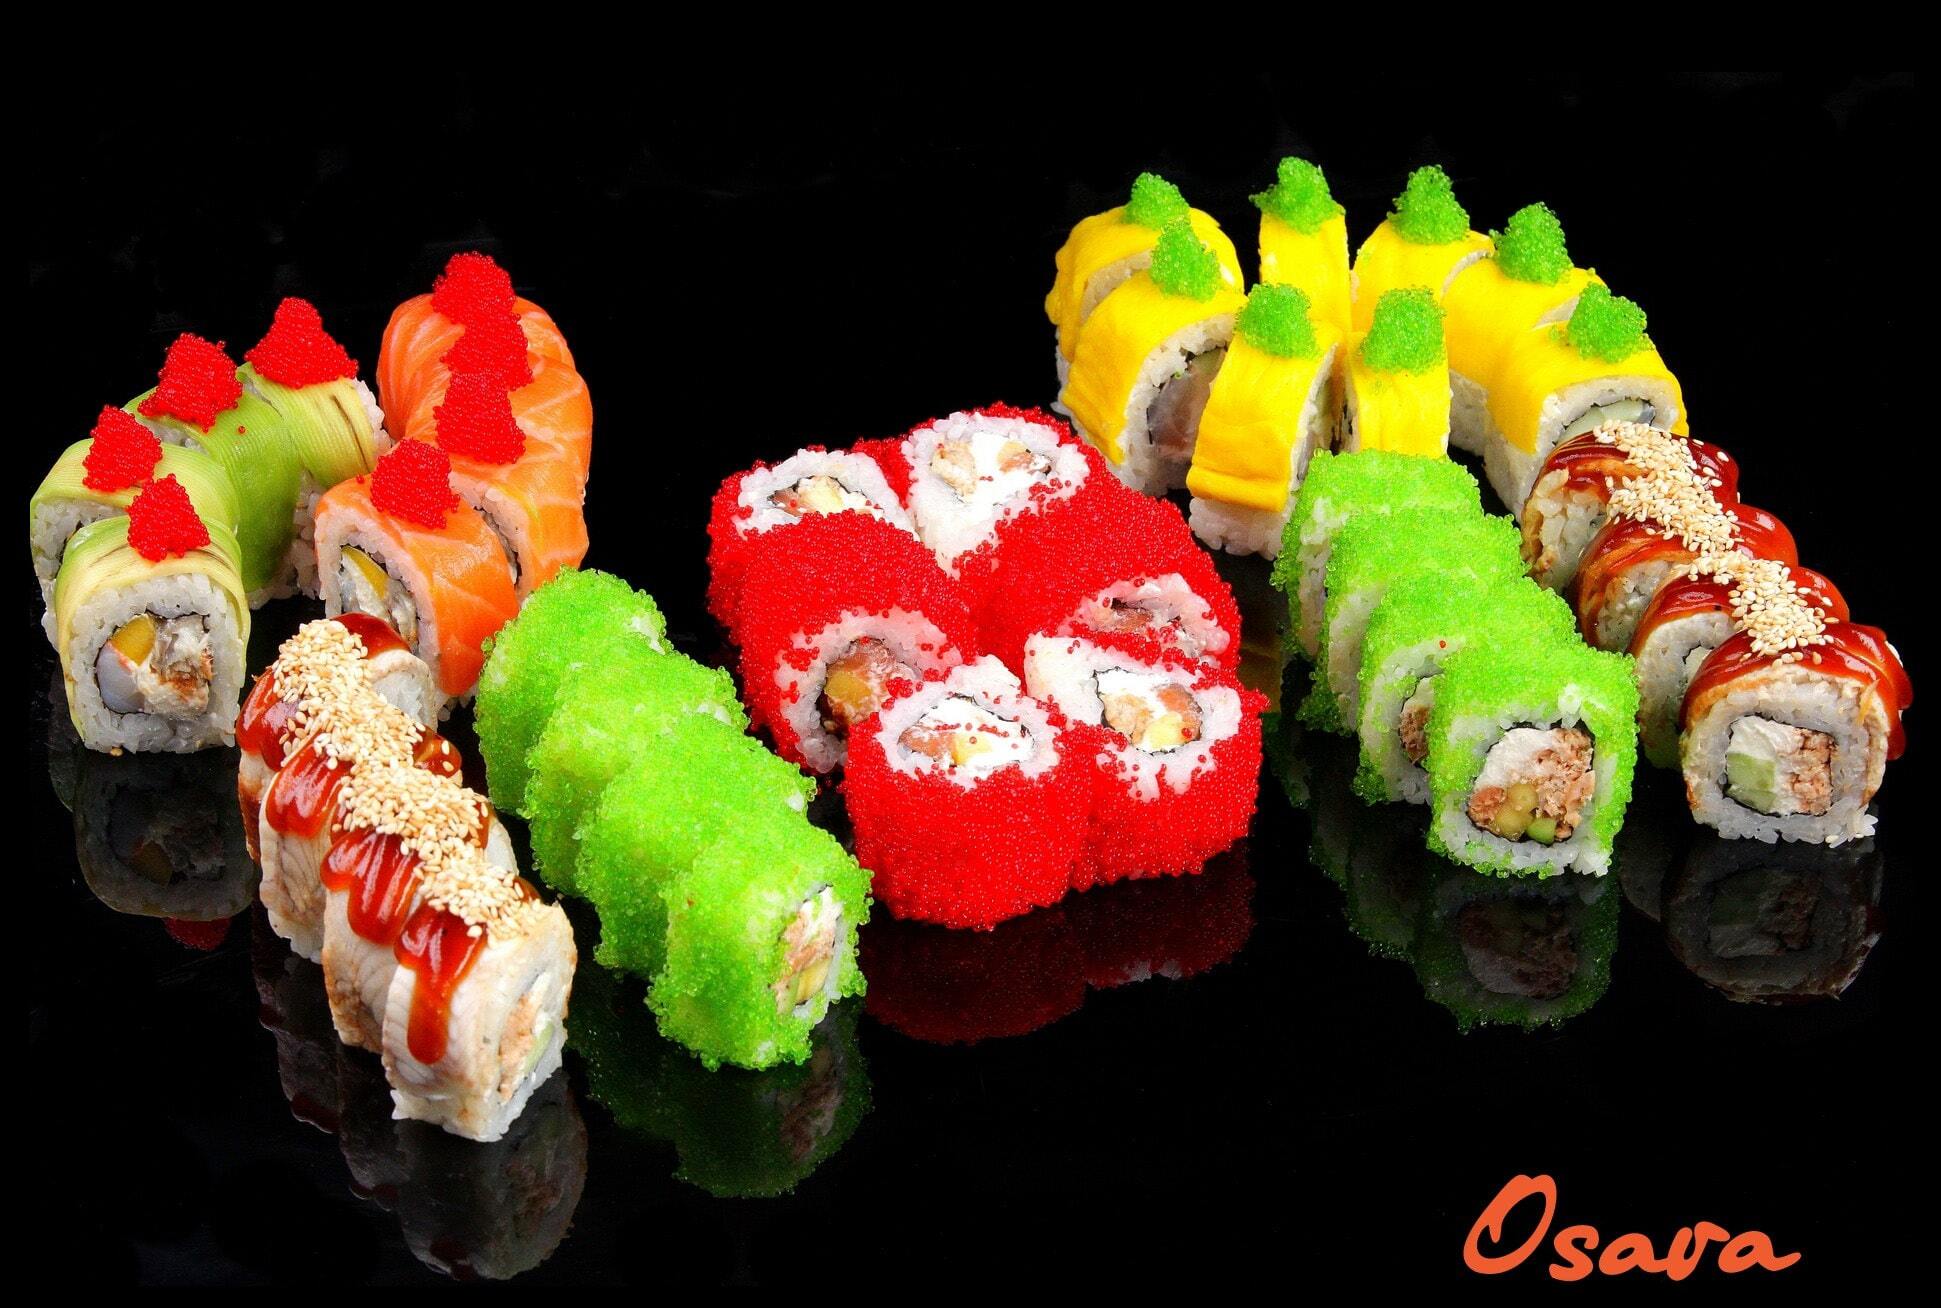 На сайте вы можете купить суши сеты Одесса в суши баре Osava.